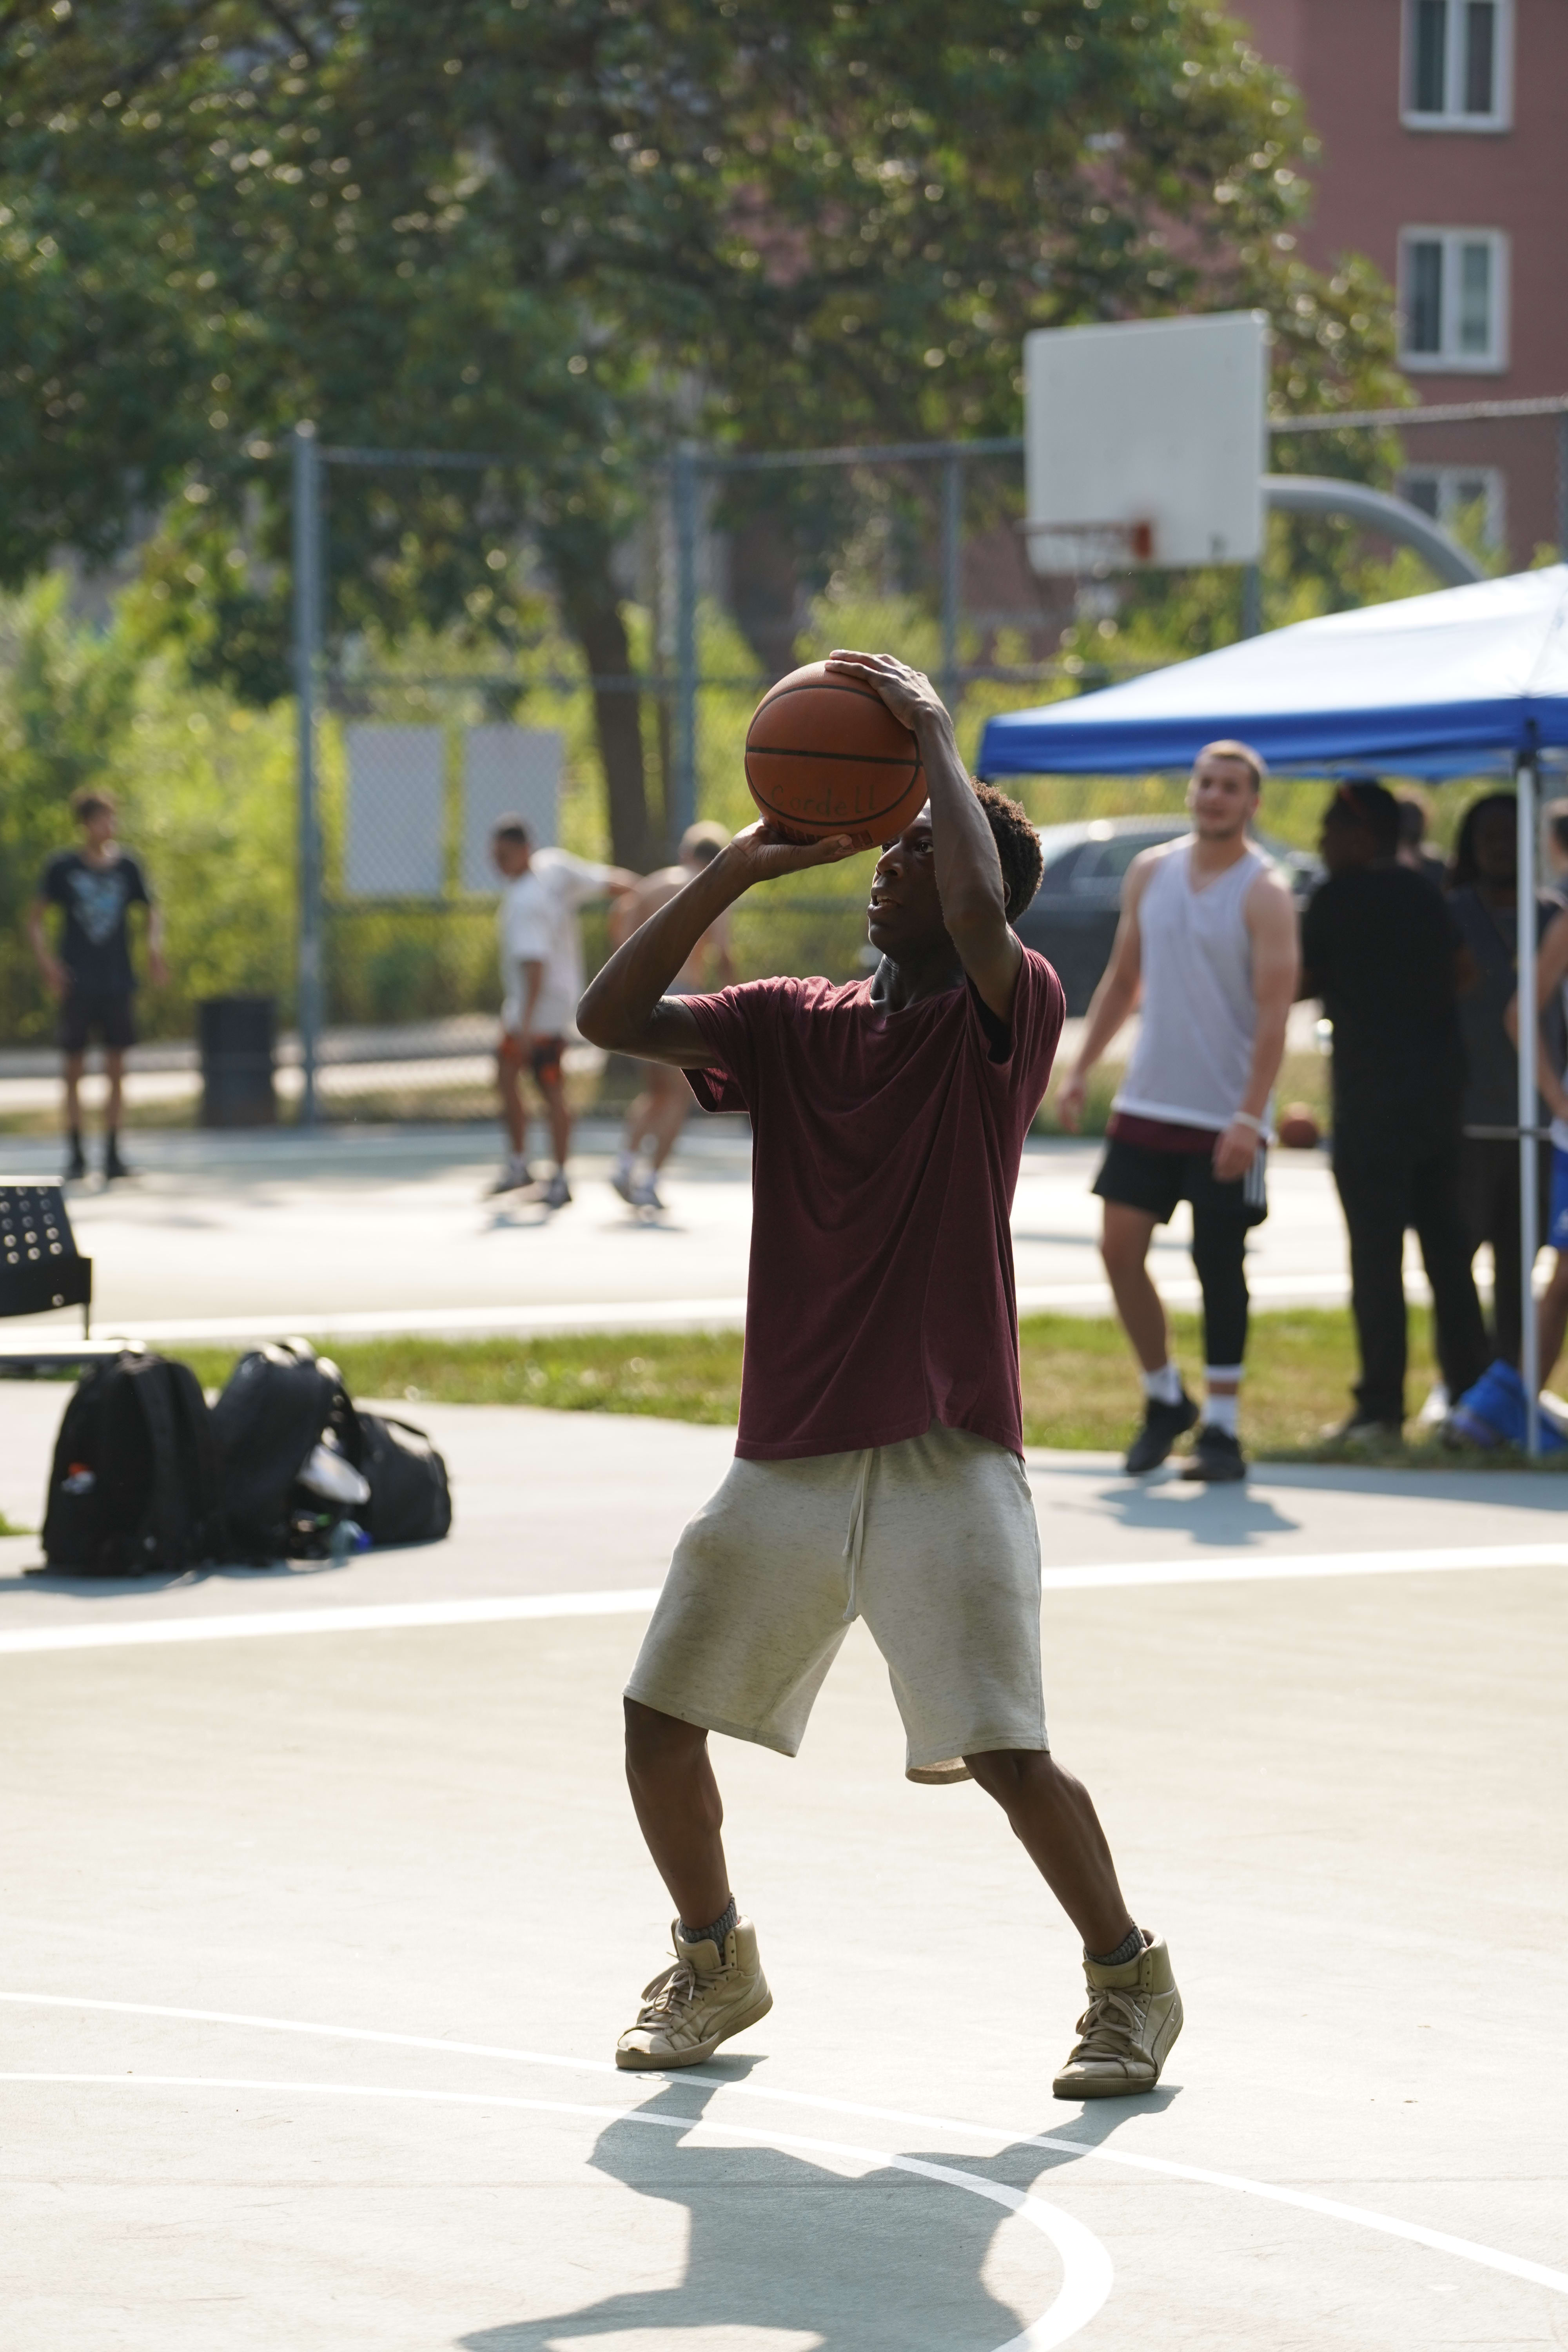 A basketball player shooting the ball